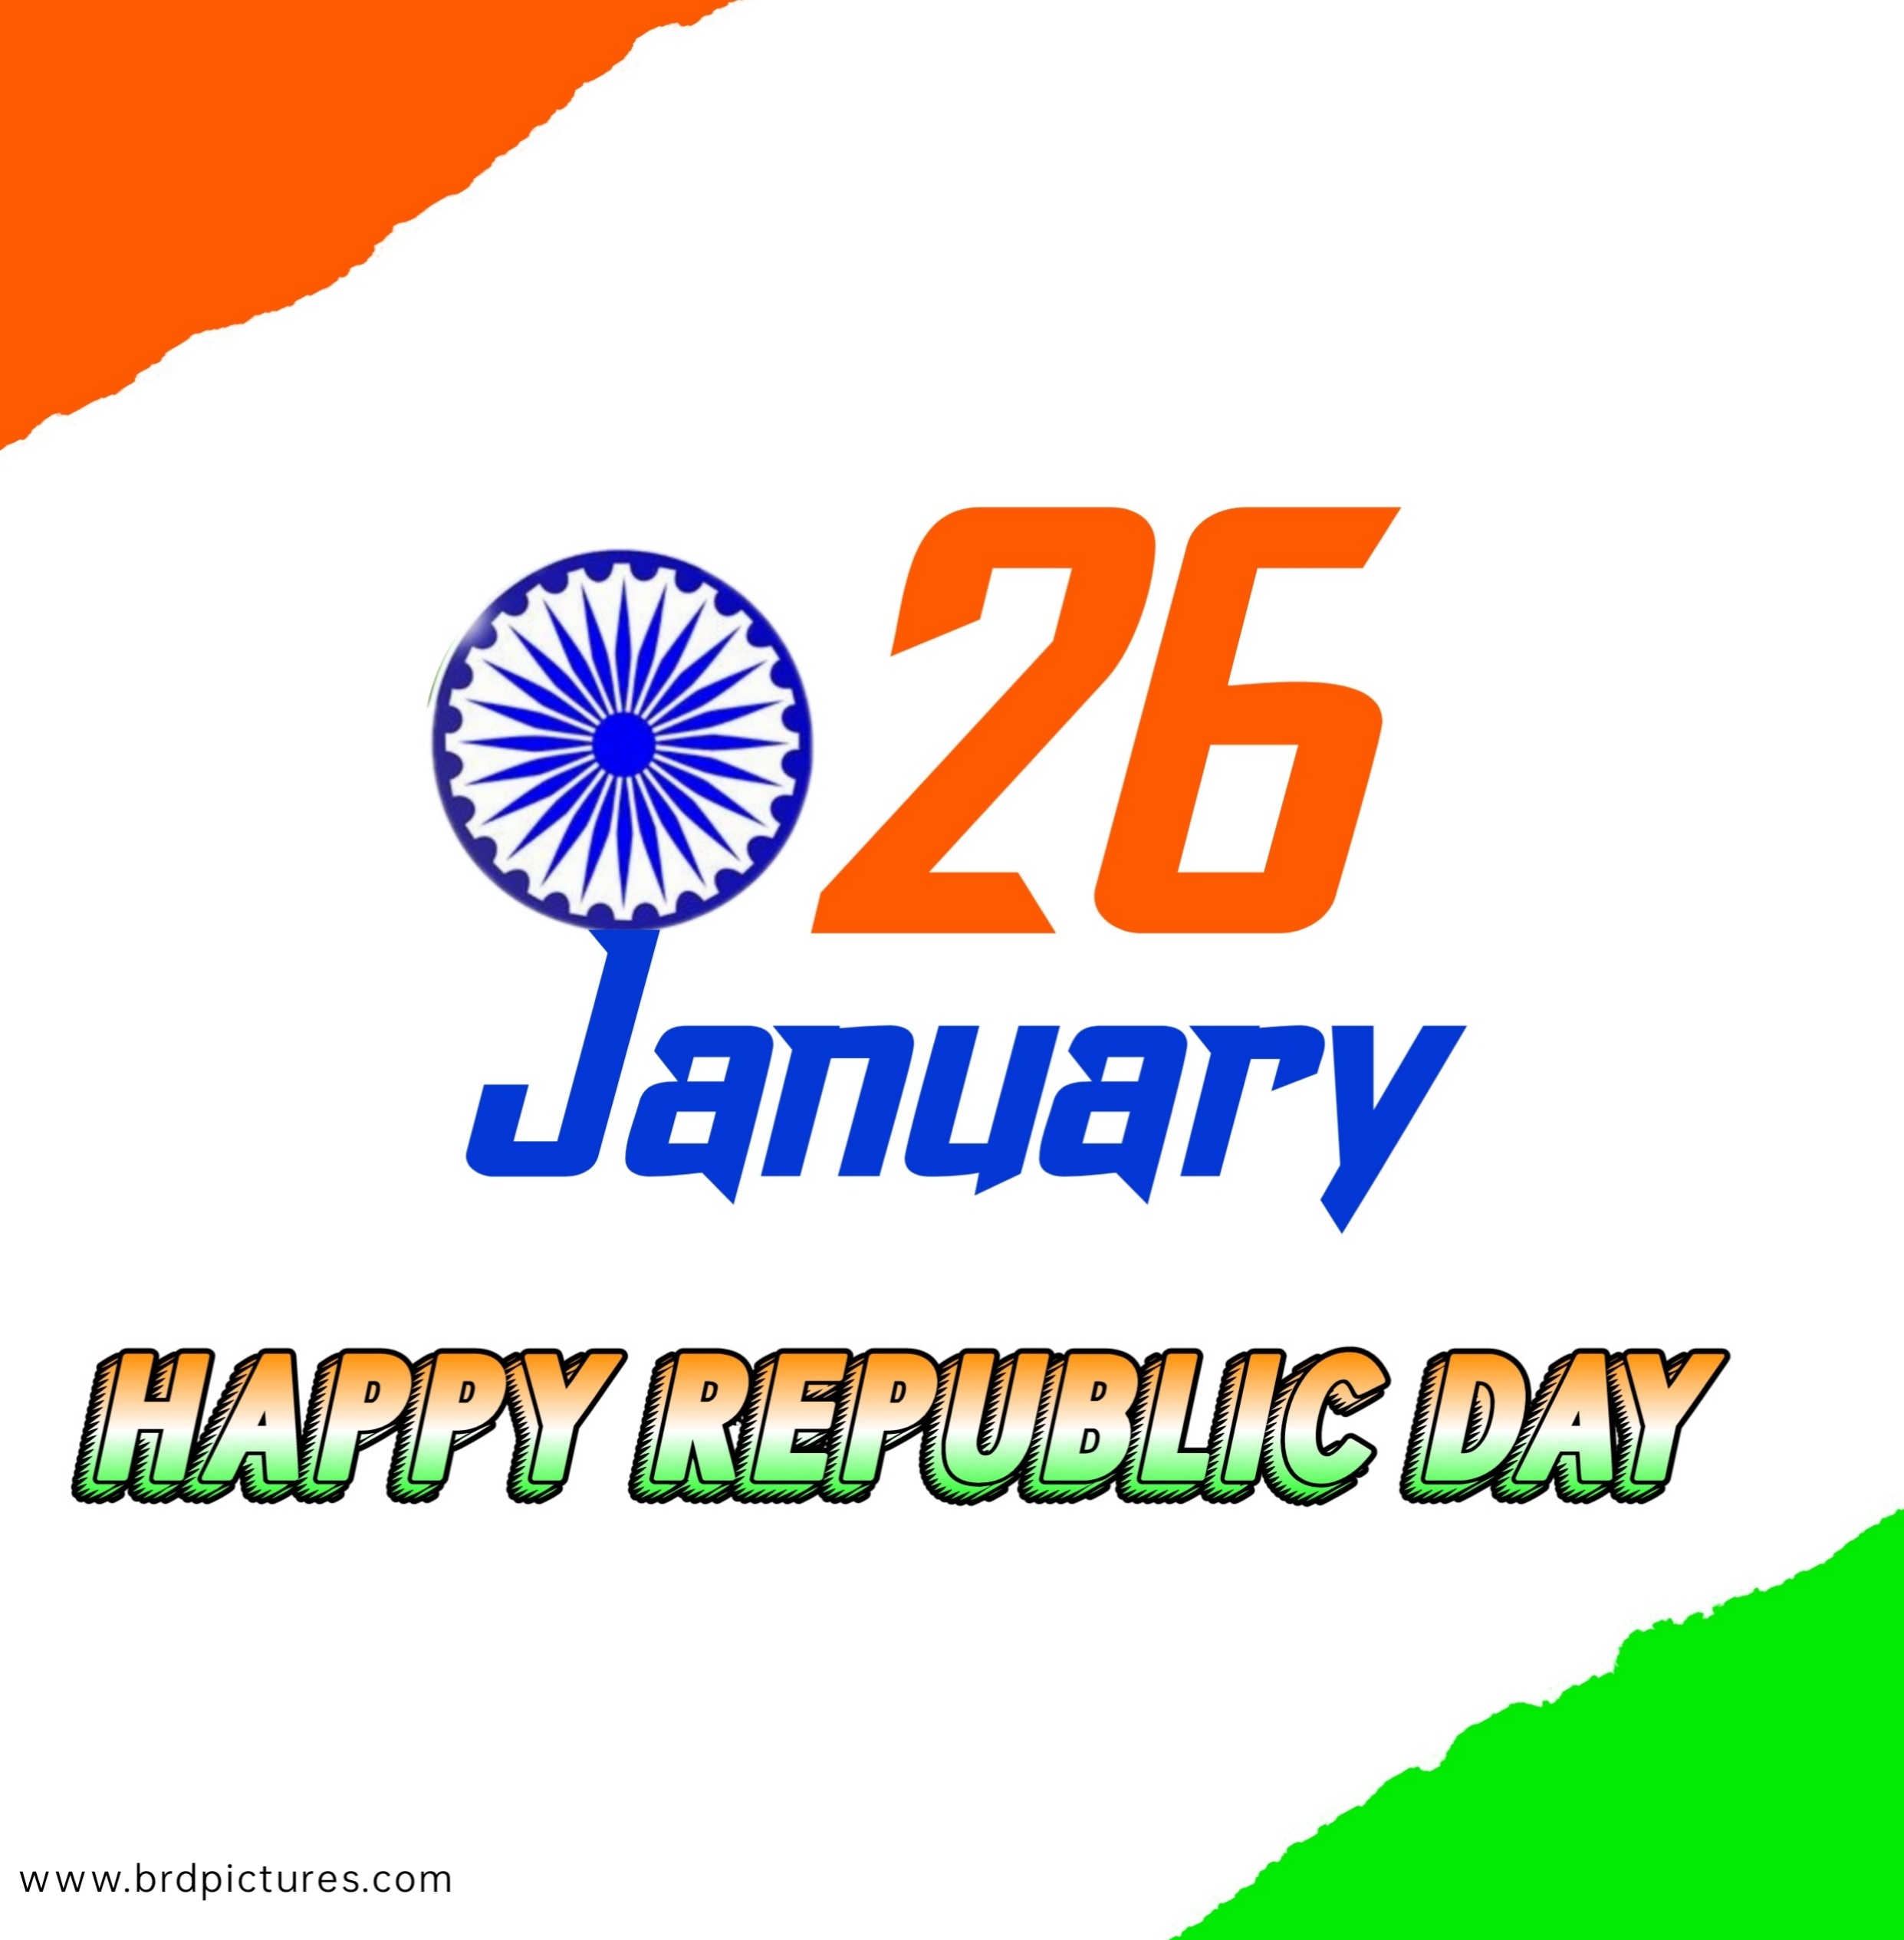 26 January Republic Day Image HD 